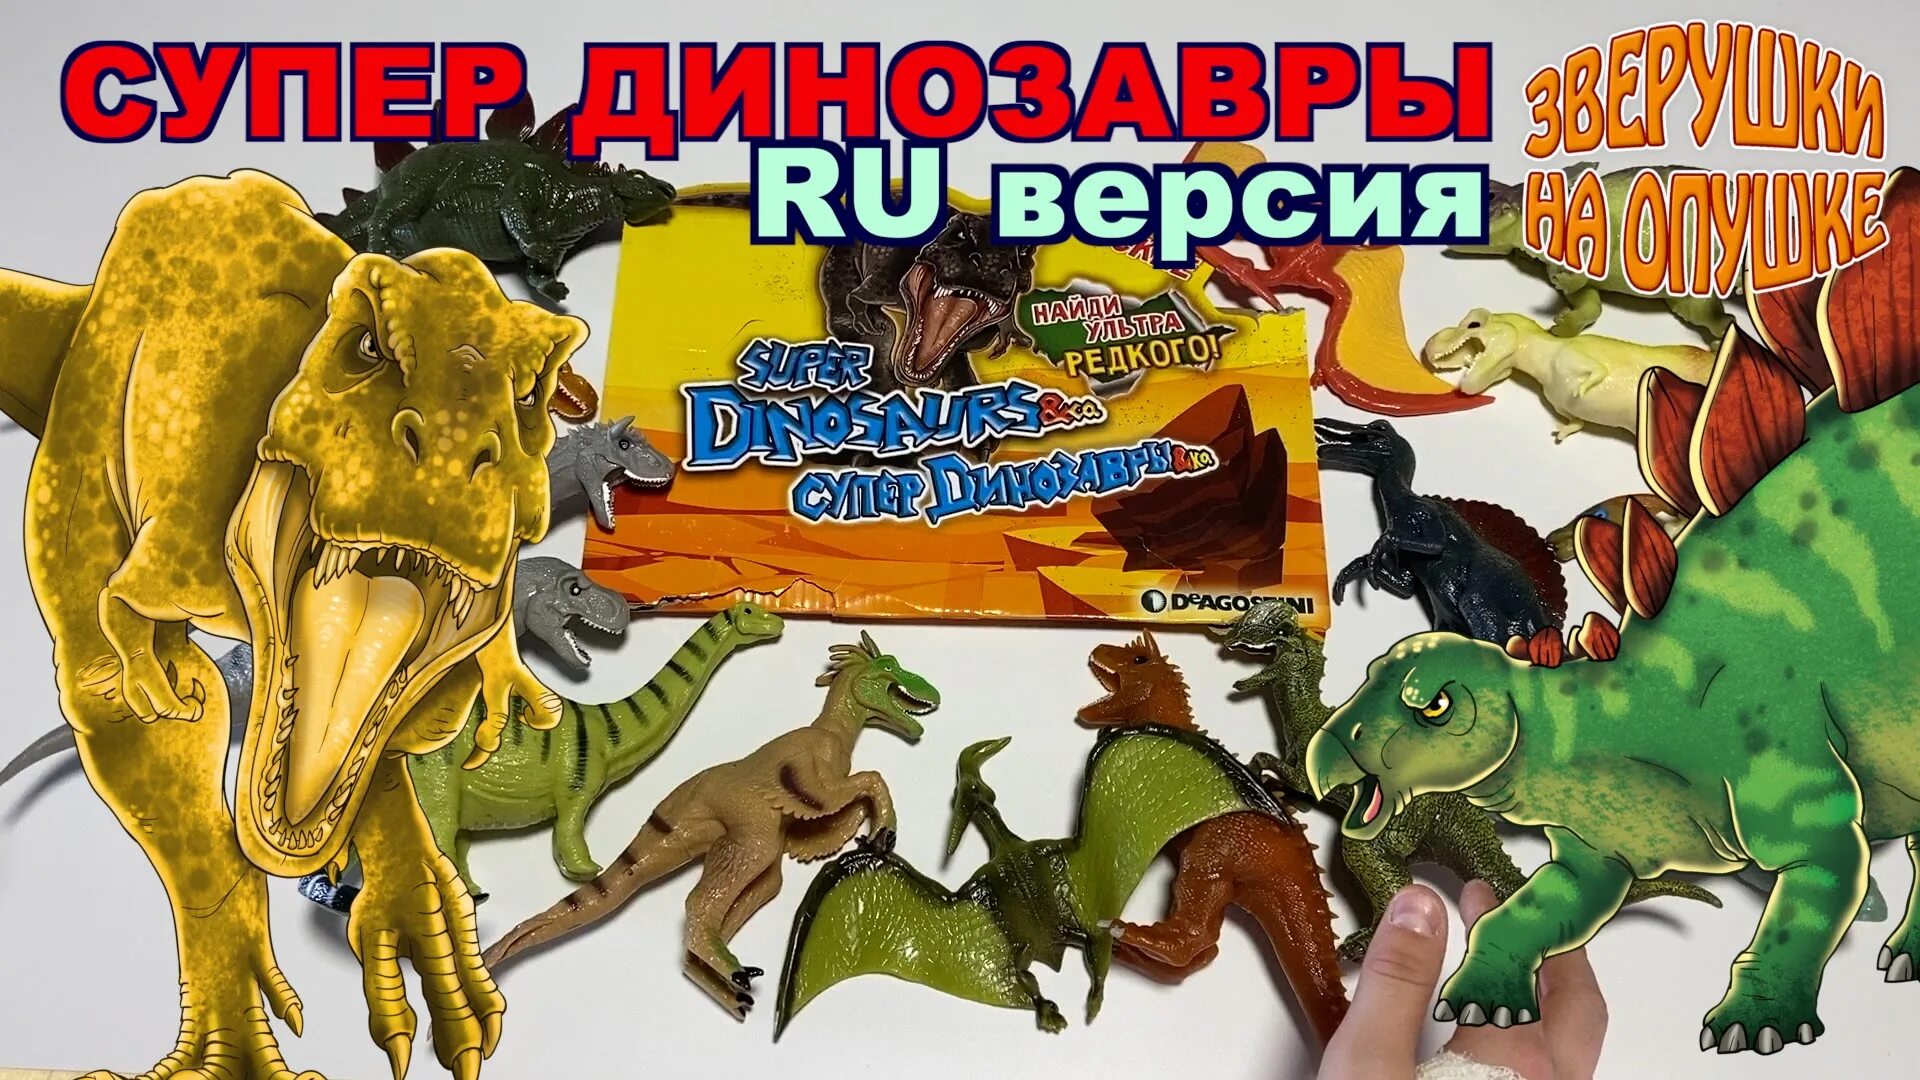 Супер динозавры и ко макси ДЕАГОСТИНИ. ДЕАГОСТИНИ морские динозавры энд ко макси. Коллекция эко макси динозавры. Хищники Юрского периода игрушки ДЕАГОСТИНИ.